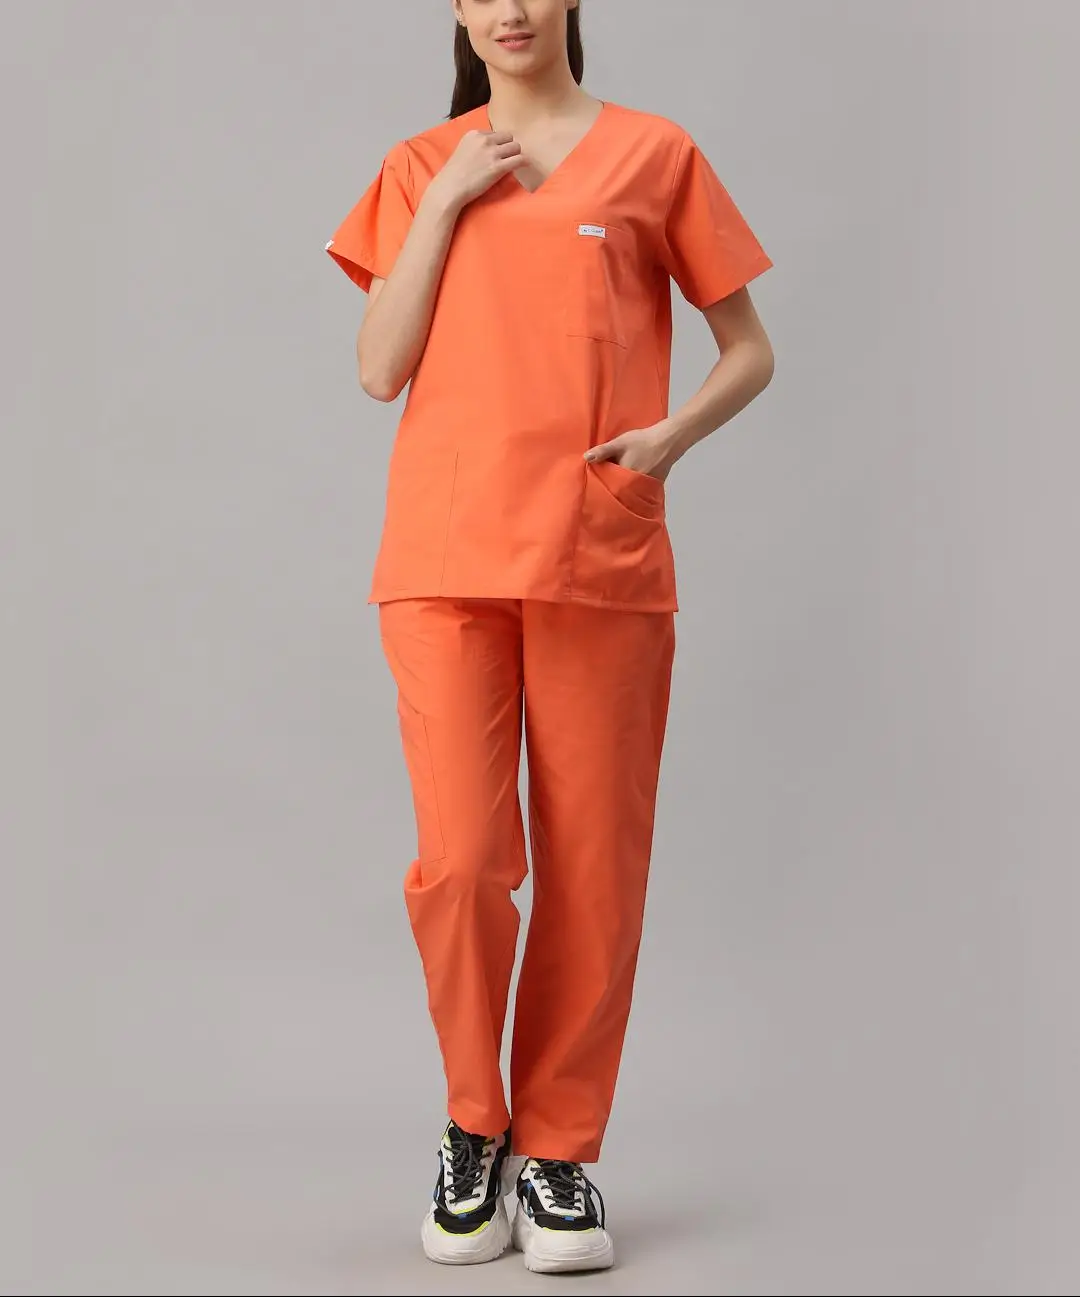 Pantalón naranja, para áreas restringidas en hospitales.